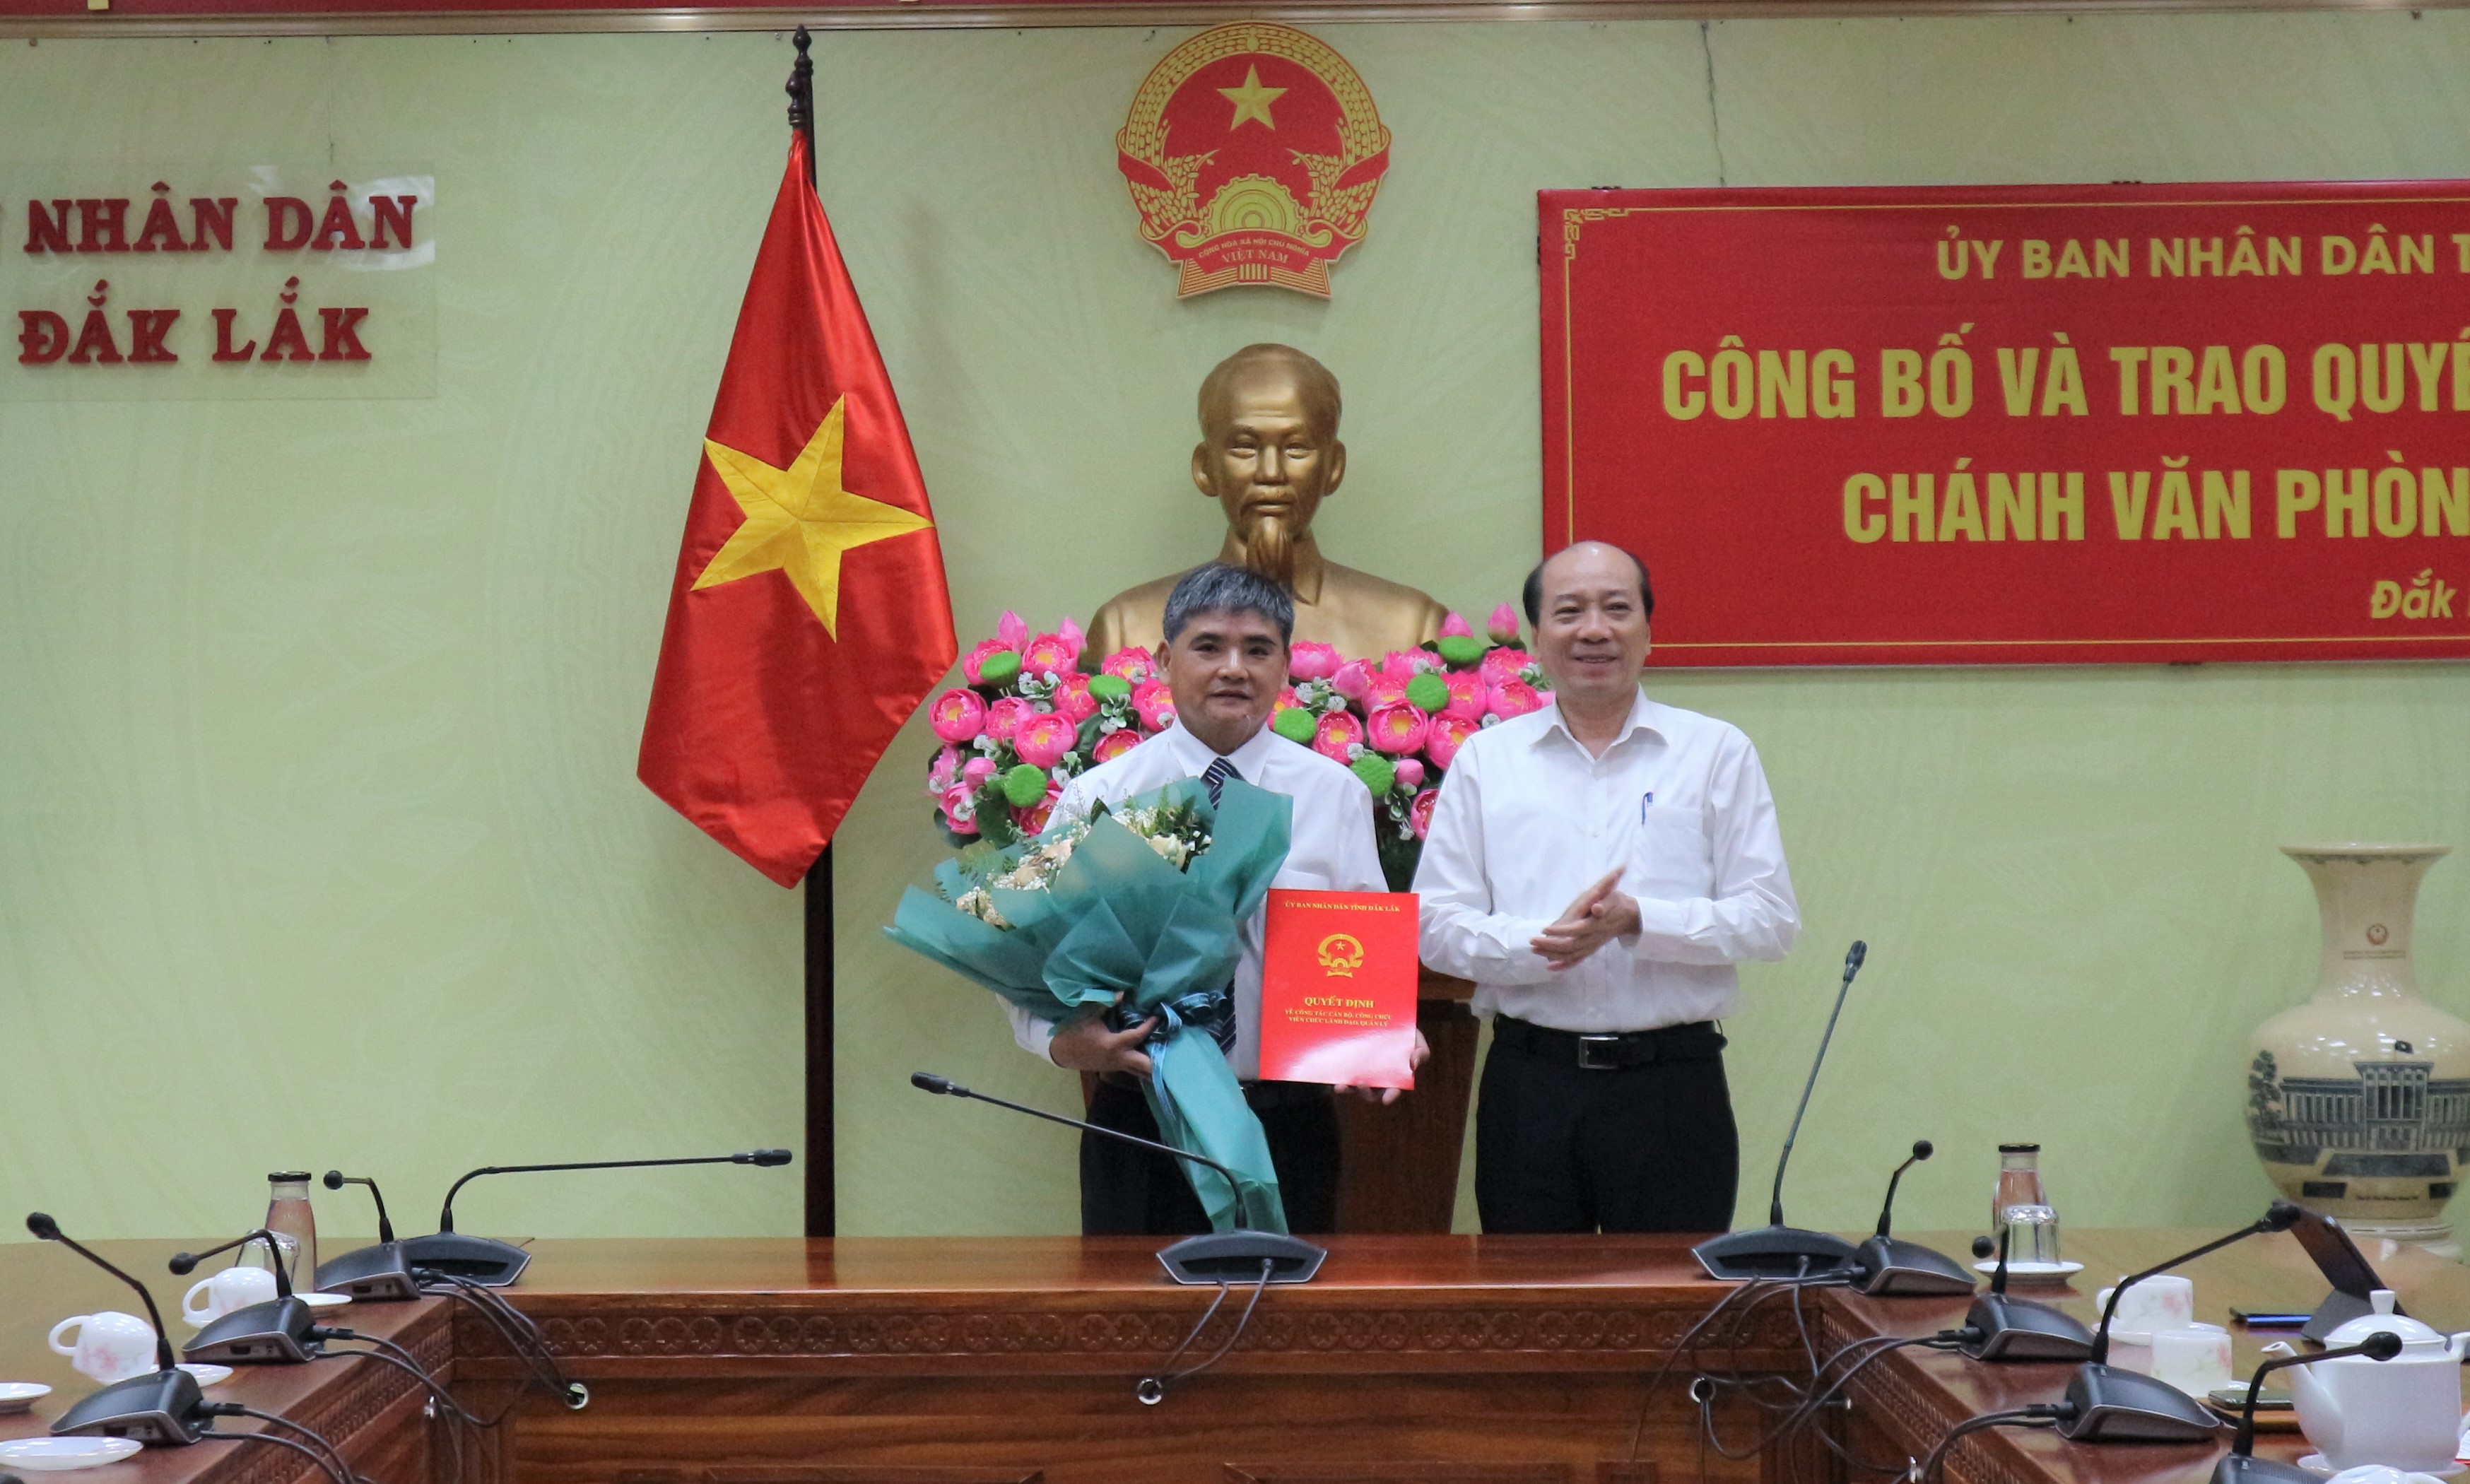 Đồng chí Nguyễn Đức Vinh được bổ nhiệm giữ chức vụ Chánh Văn phòng UBND tỉnh